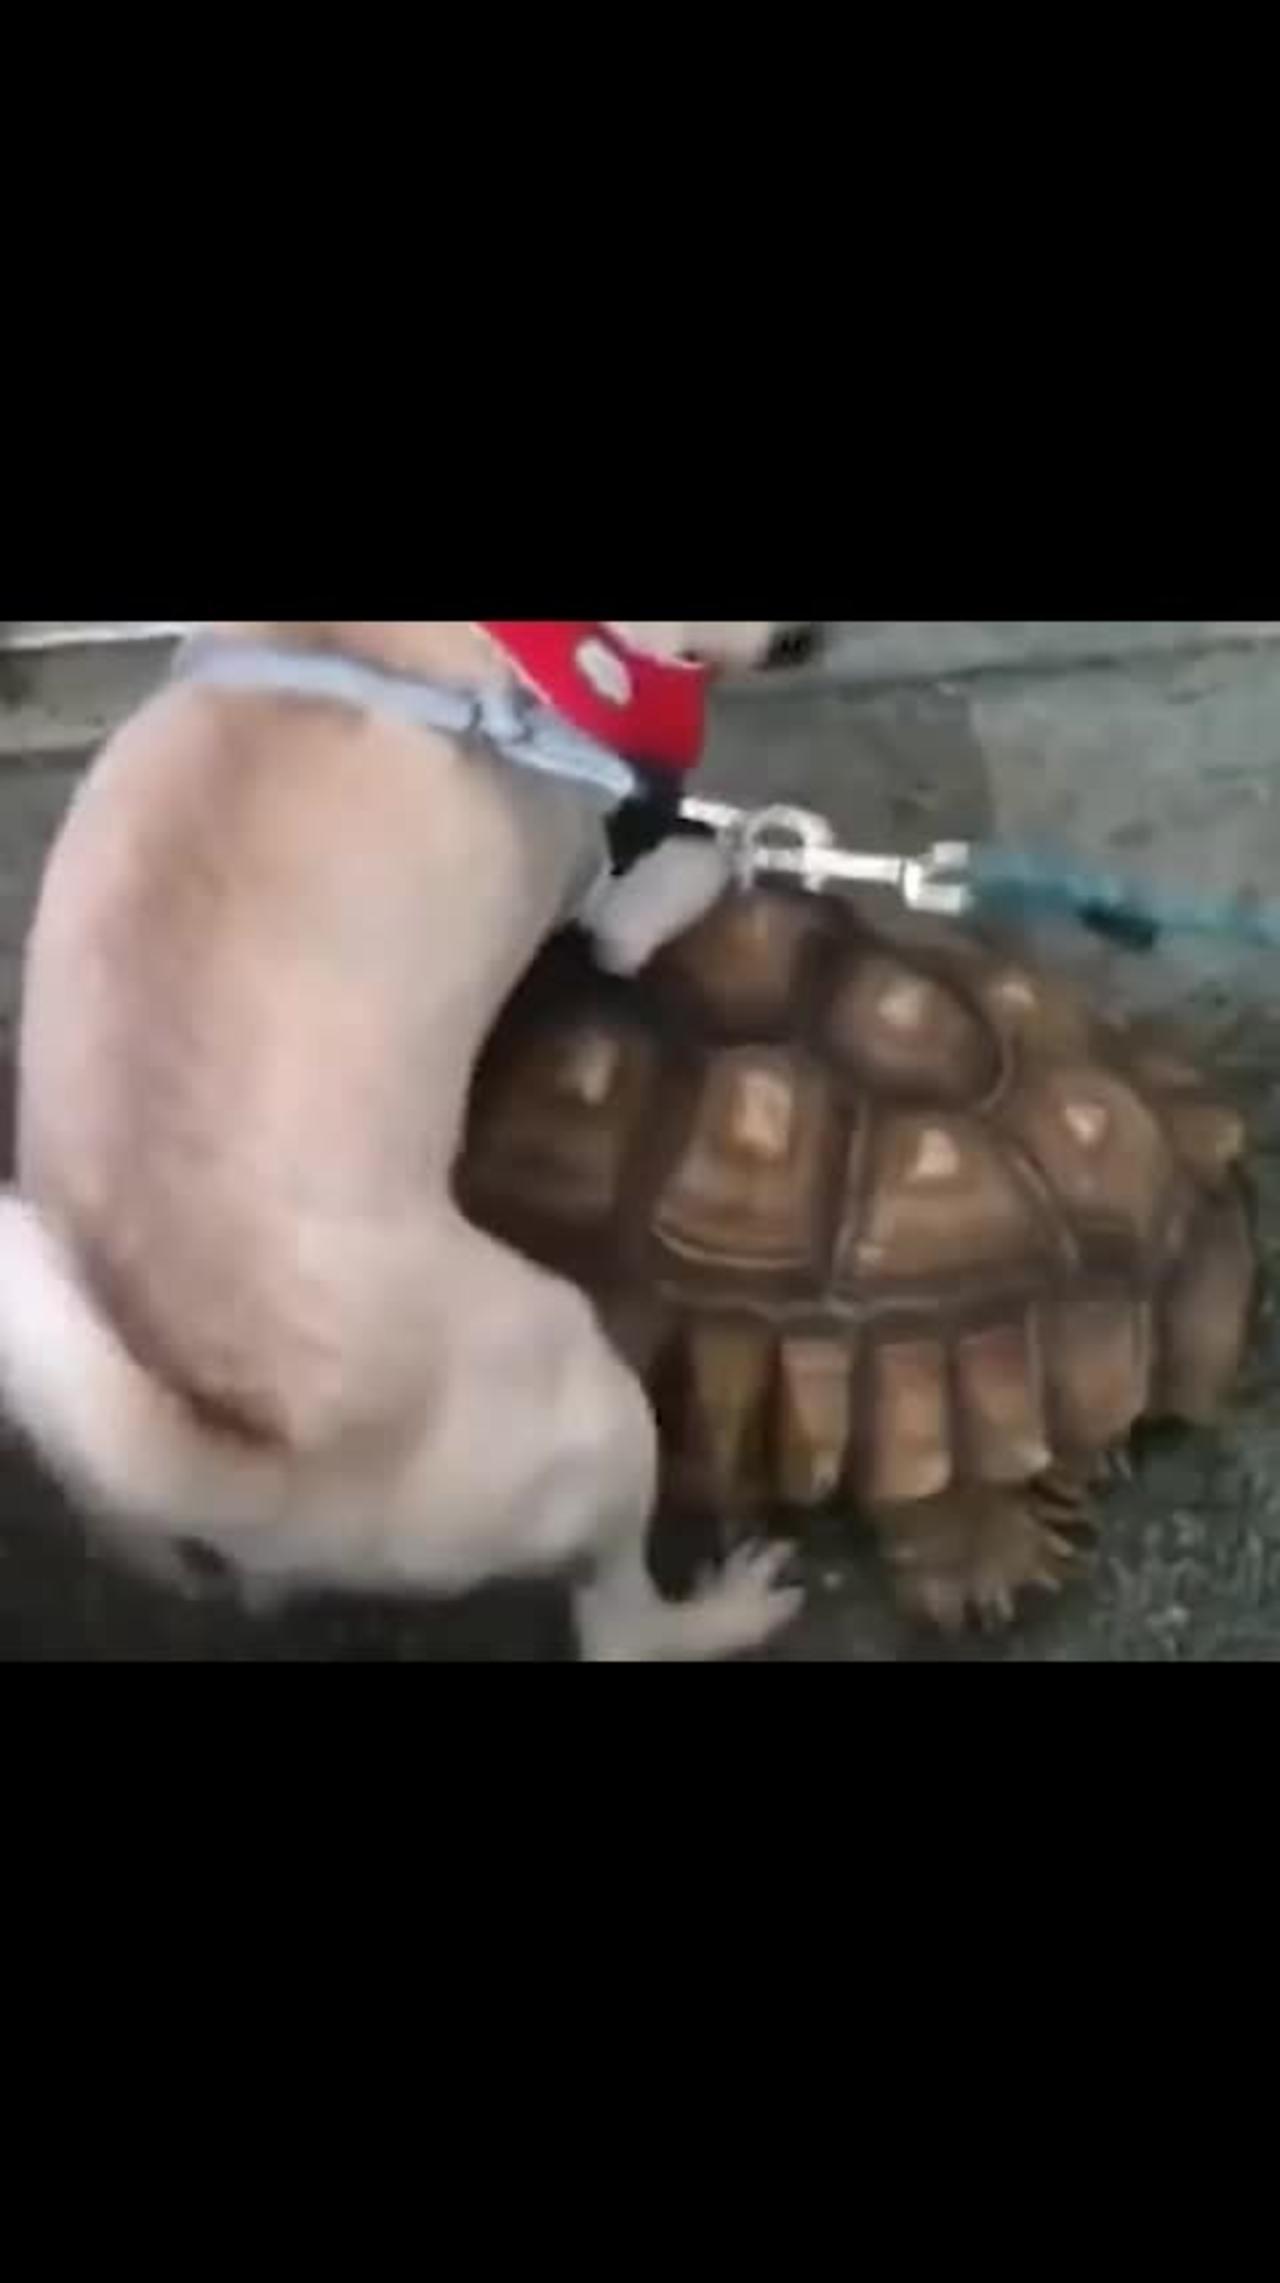 Turtle, don't go. Let me ride